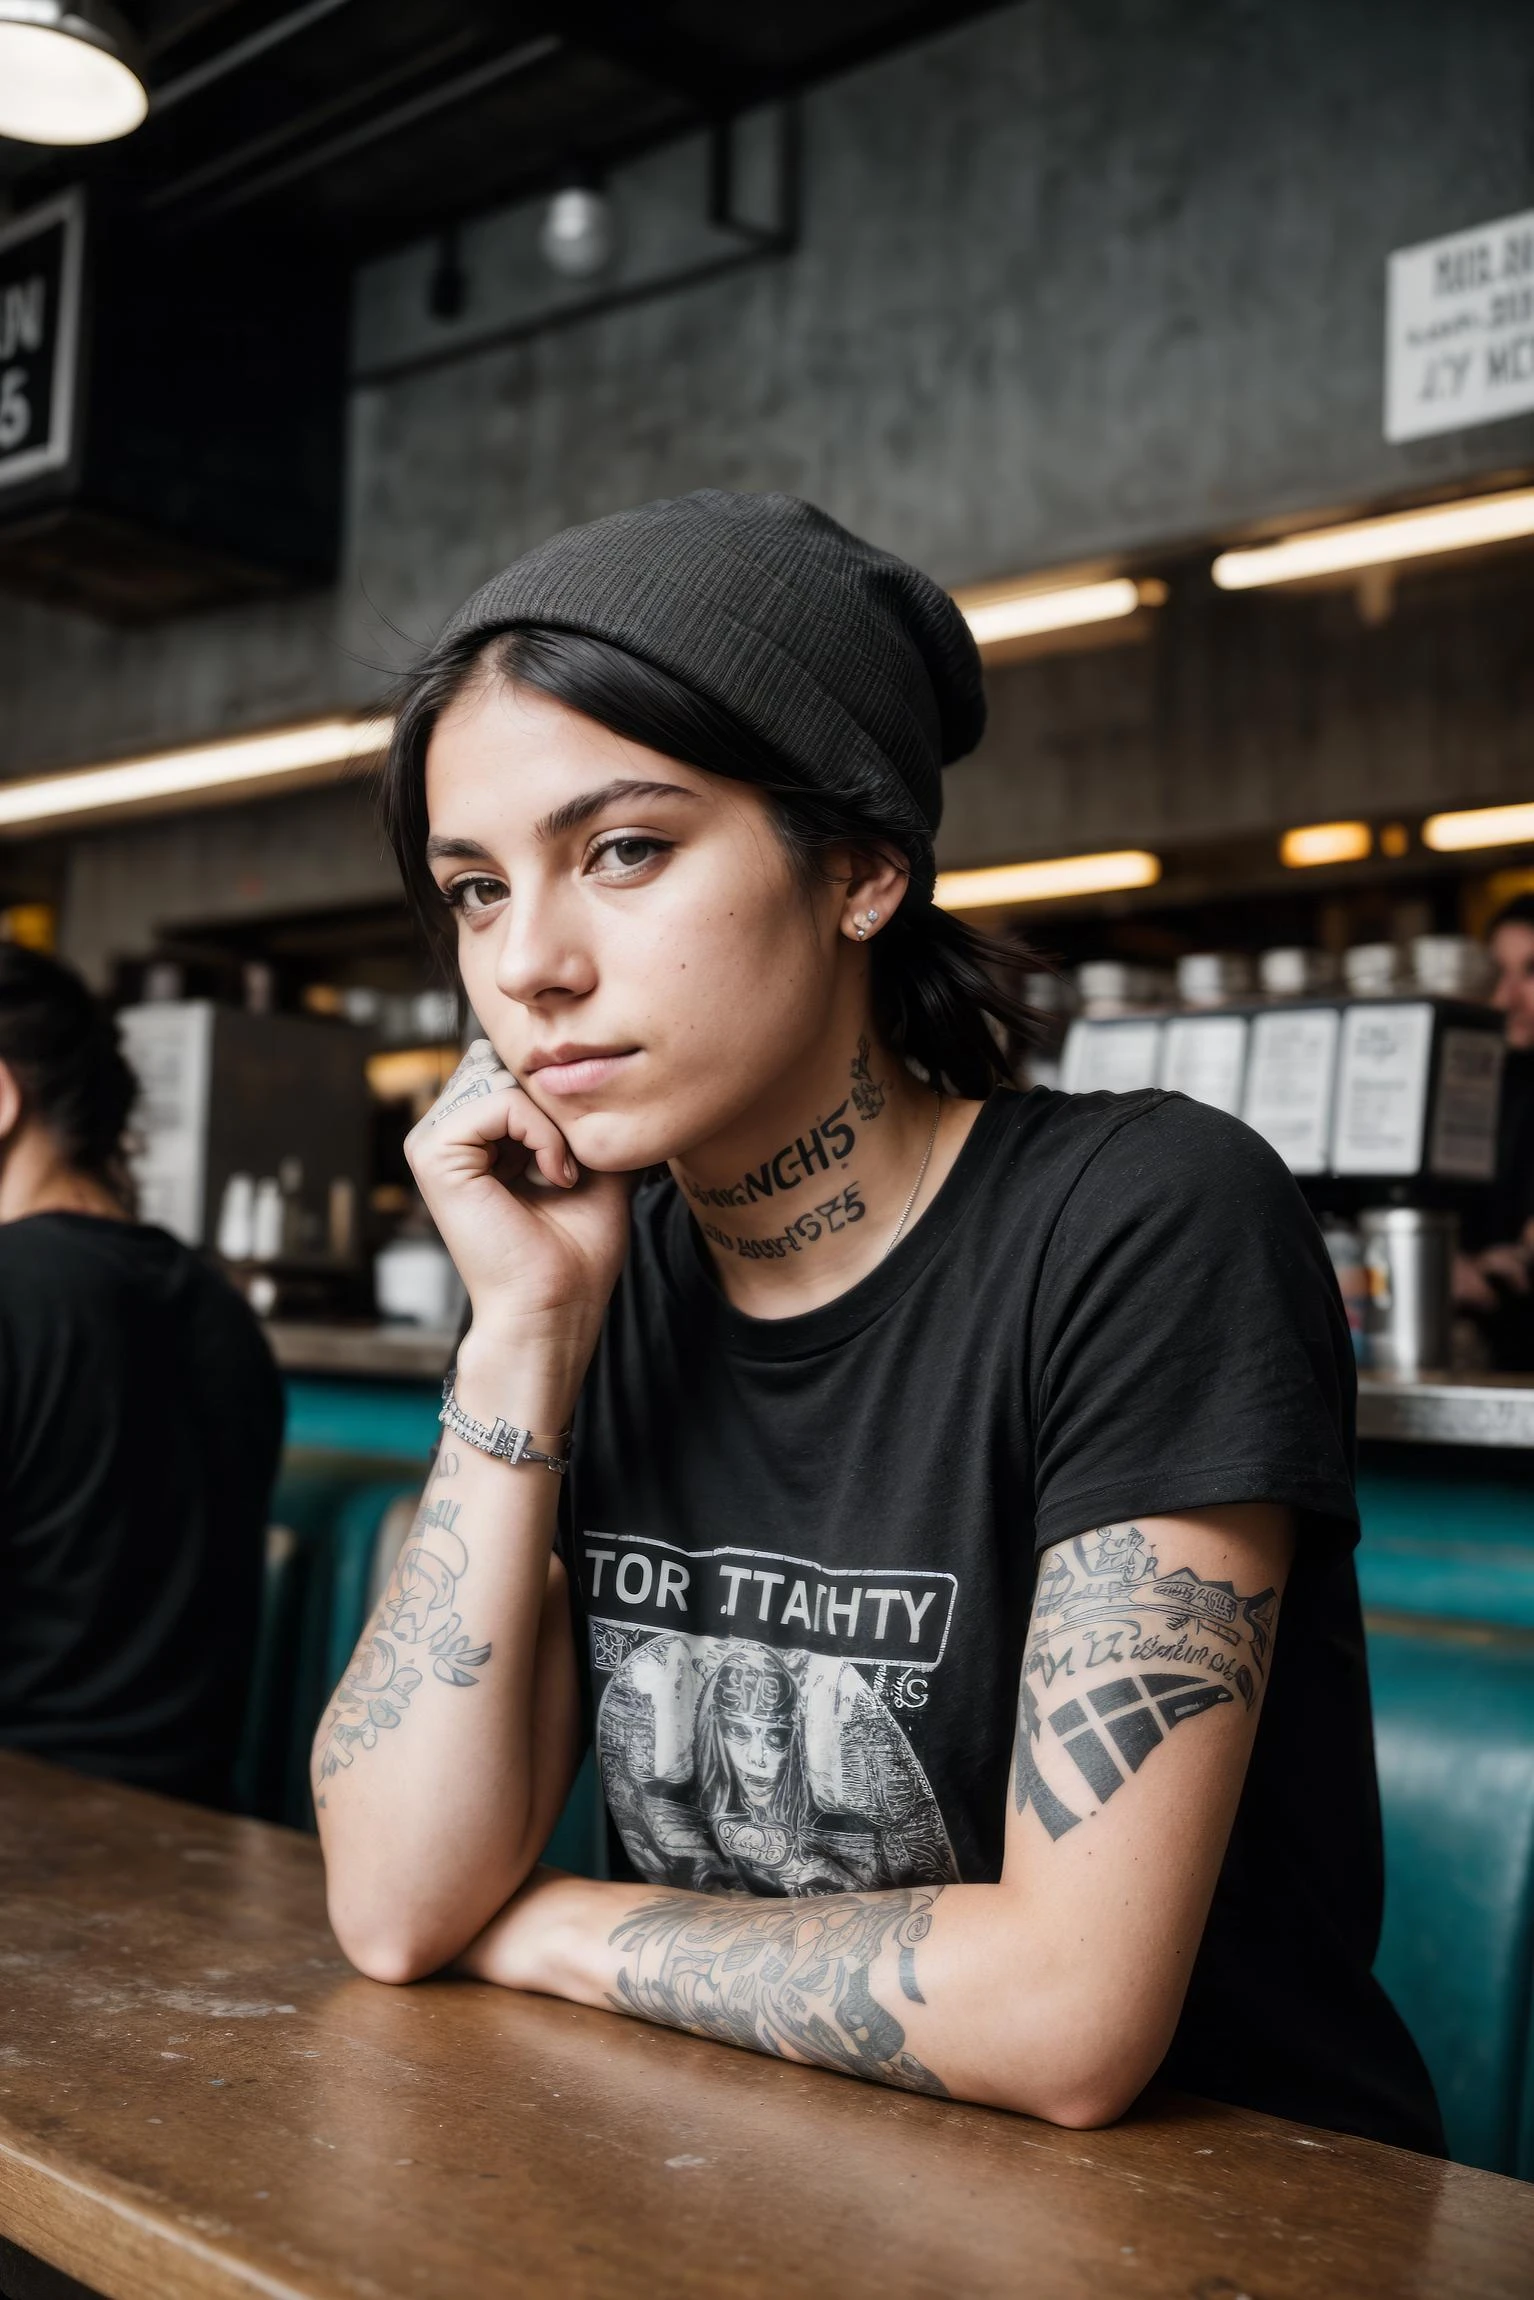 fotografia de rua crua e corajosa, simples limpo terra jovem hacker fêmea, camiseta punk preta, tatuagens no braço, sentado em uma lanchonete de rua movimentada e lotada, Filmado com Canon EOS 5D Mark IV 